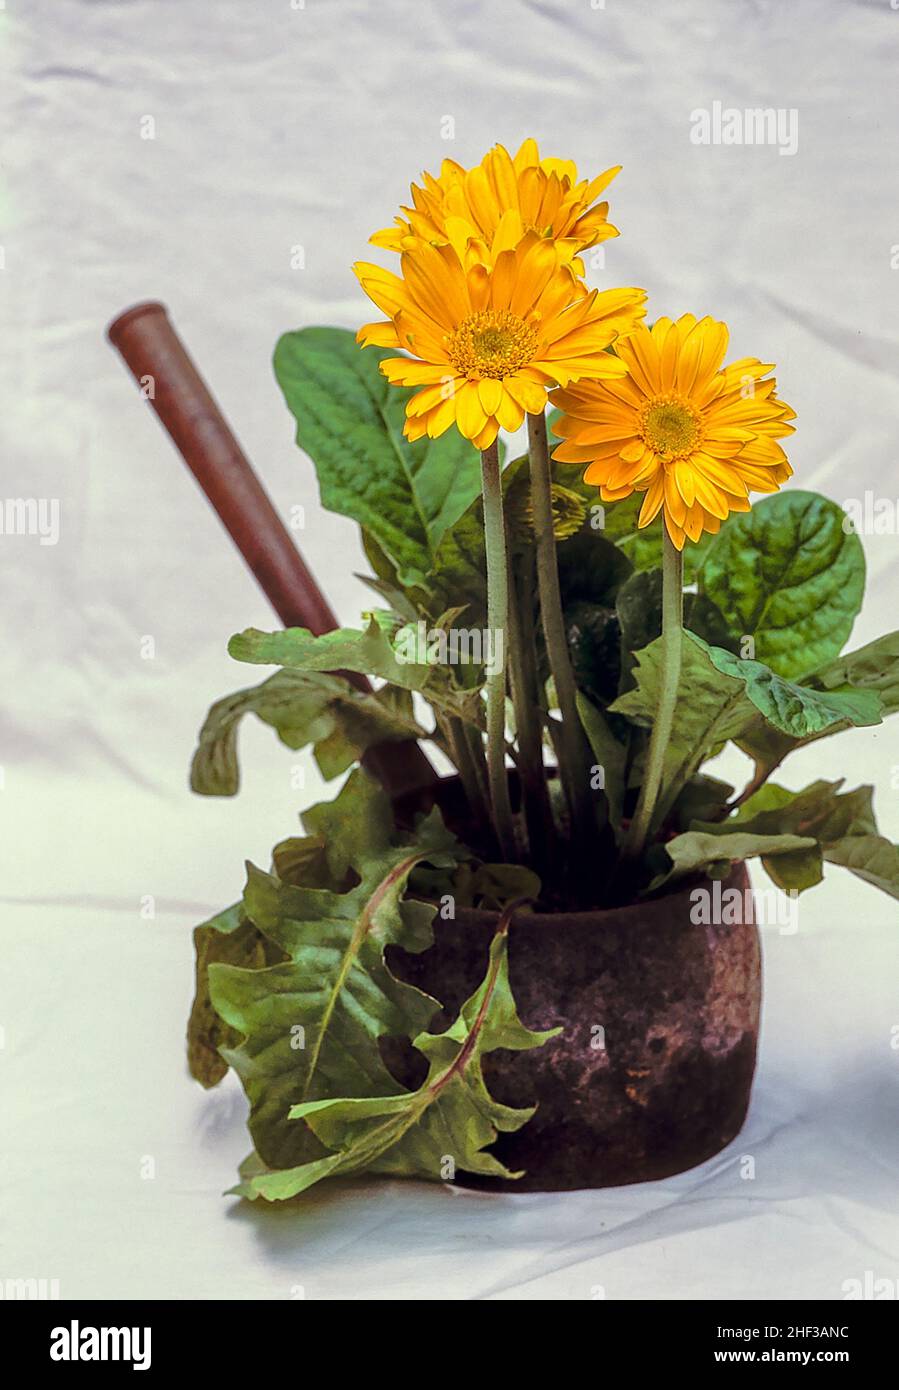 Gerbera jamesonii con flores amarillas creciendo en una olla de hierro fundido viejo. Un grupo que forma siempre verde que florece durante todo el verano. Foto de stock